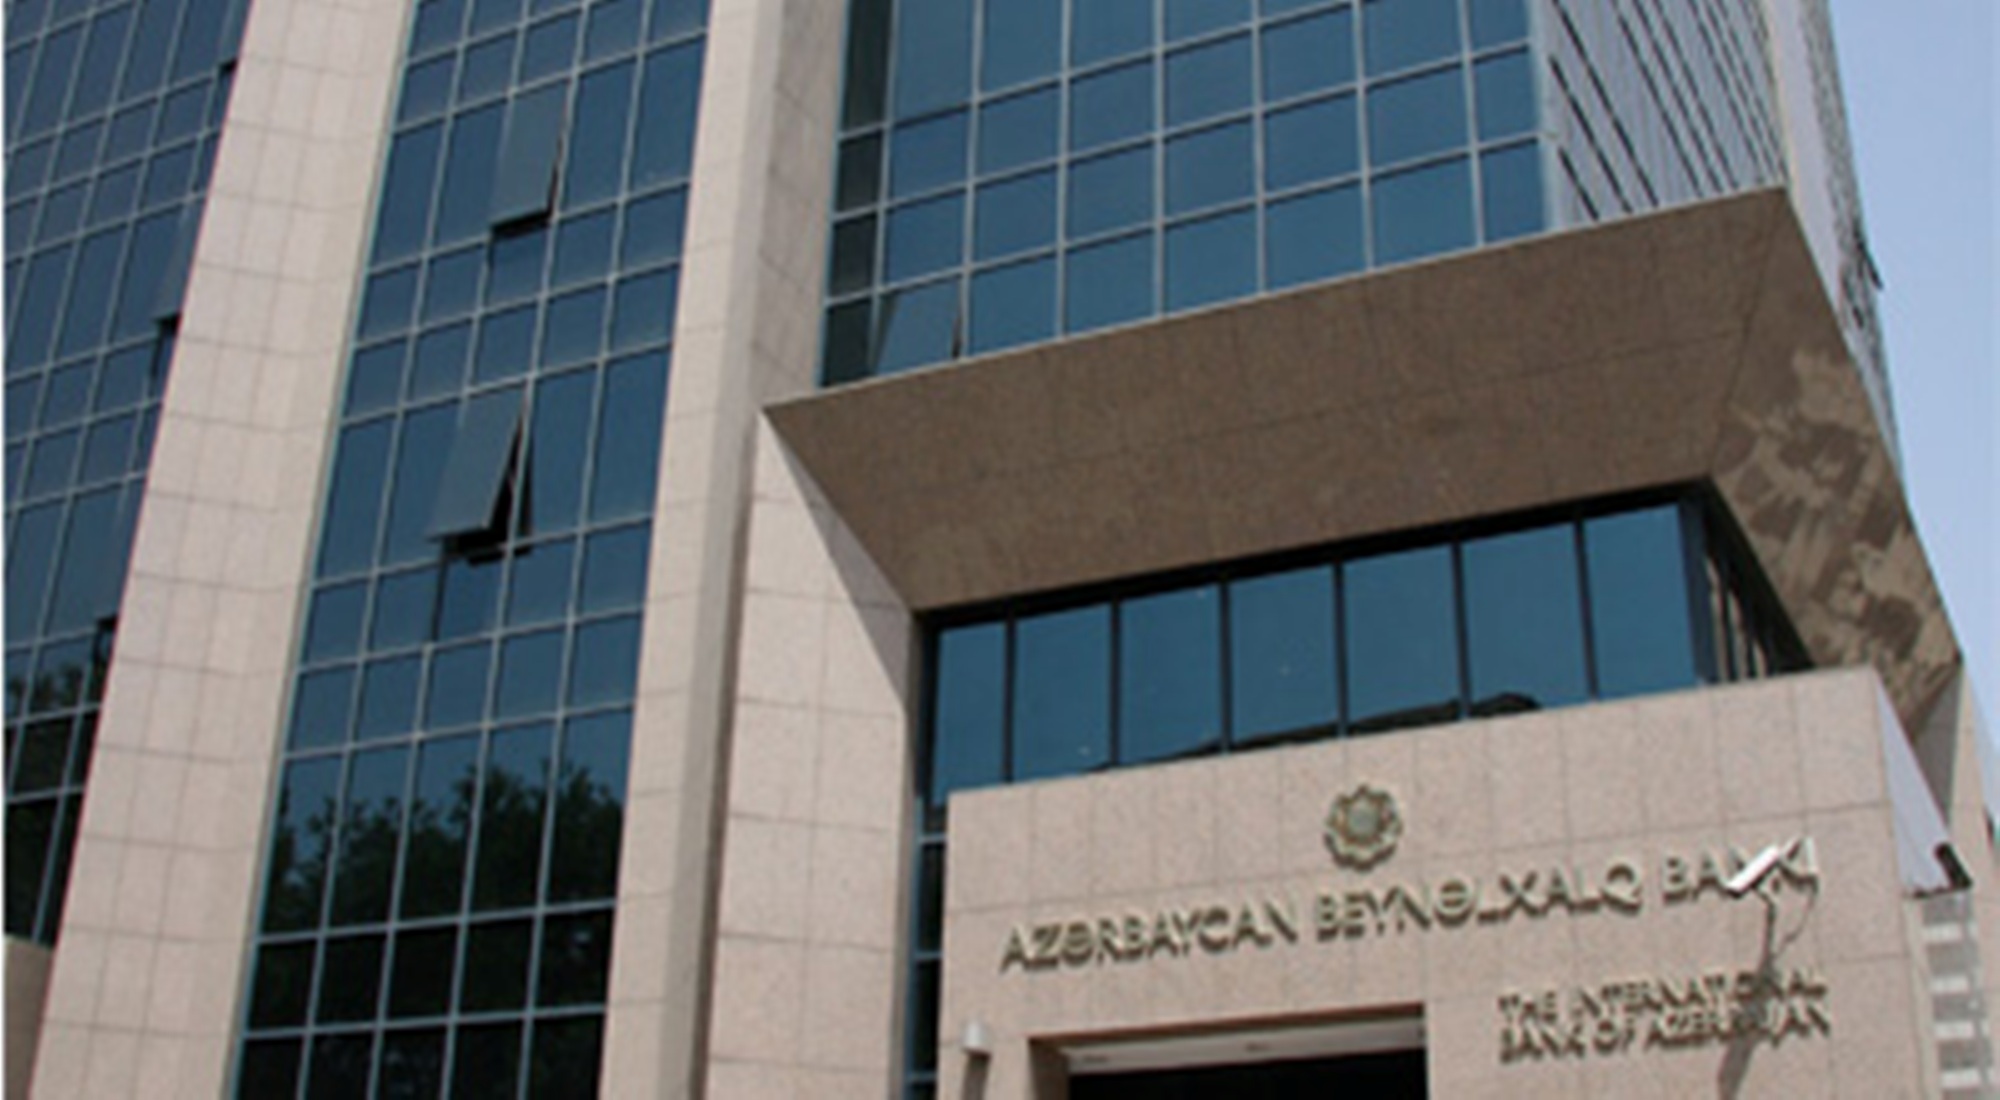 Azərbaycan Beynəlxalq Bankı tender elan edib